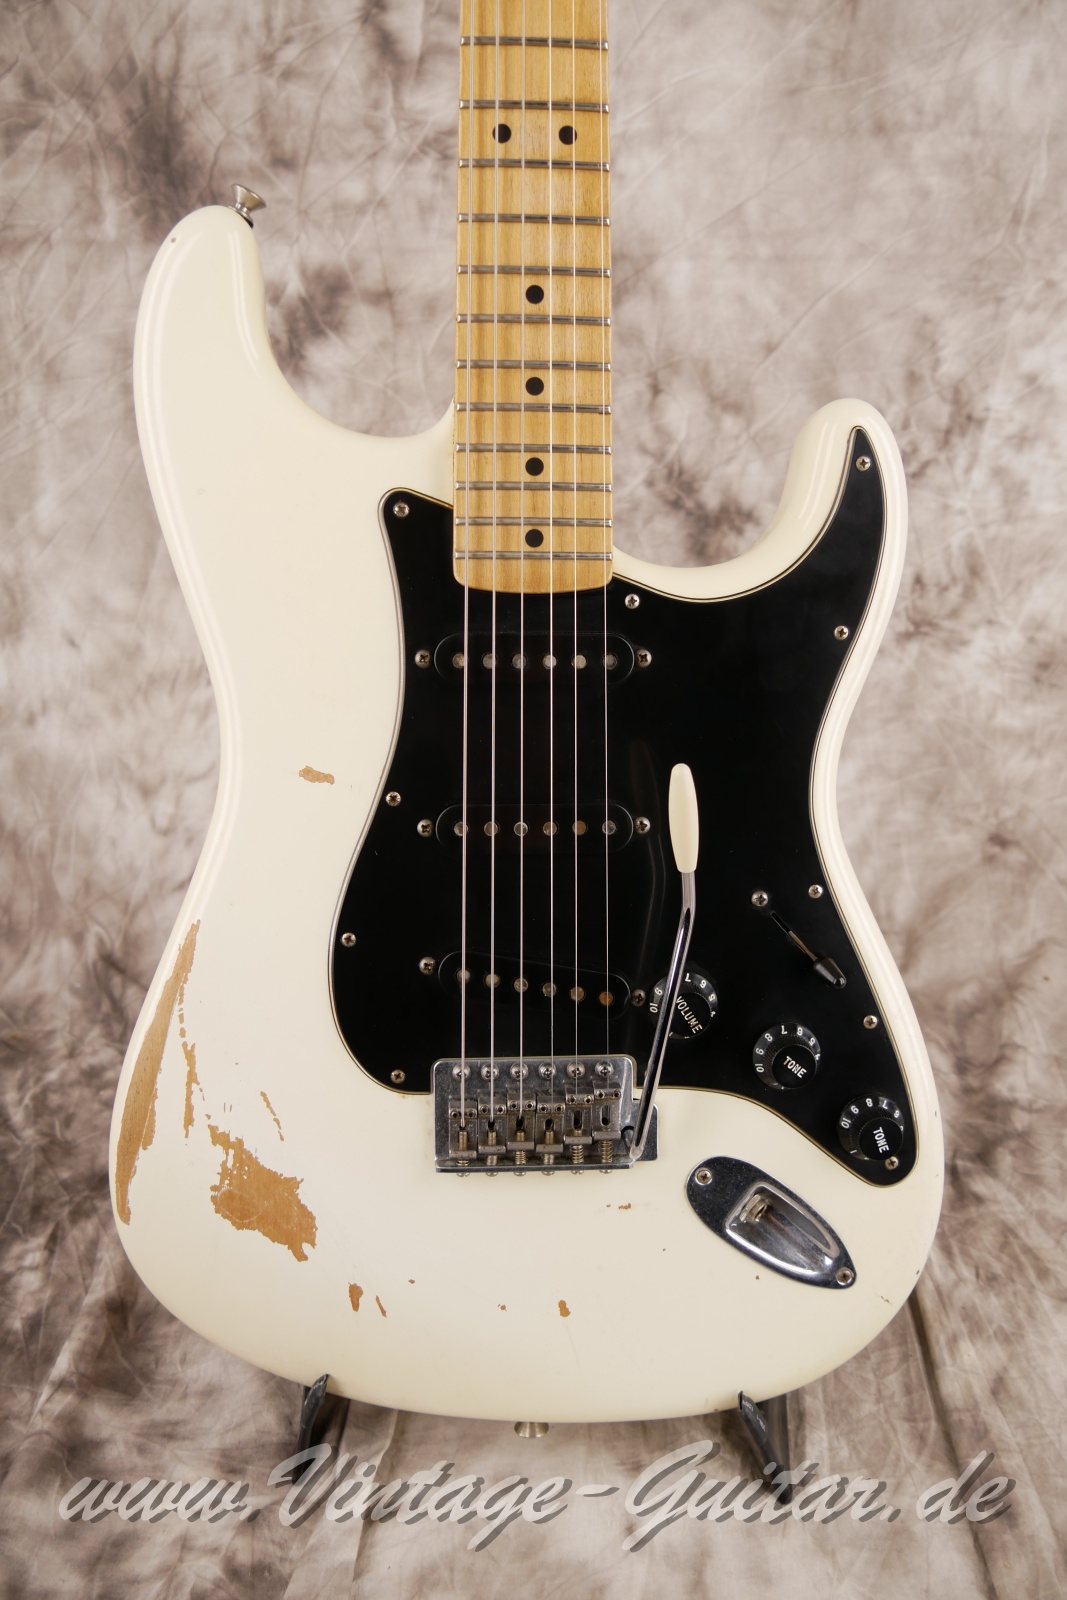 Fender-Stratocaster-roadworn-player-series-60s-reissue-2011-olympic-white-007.jpg